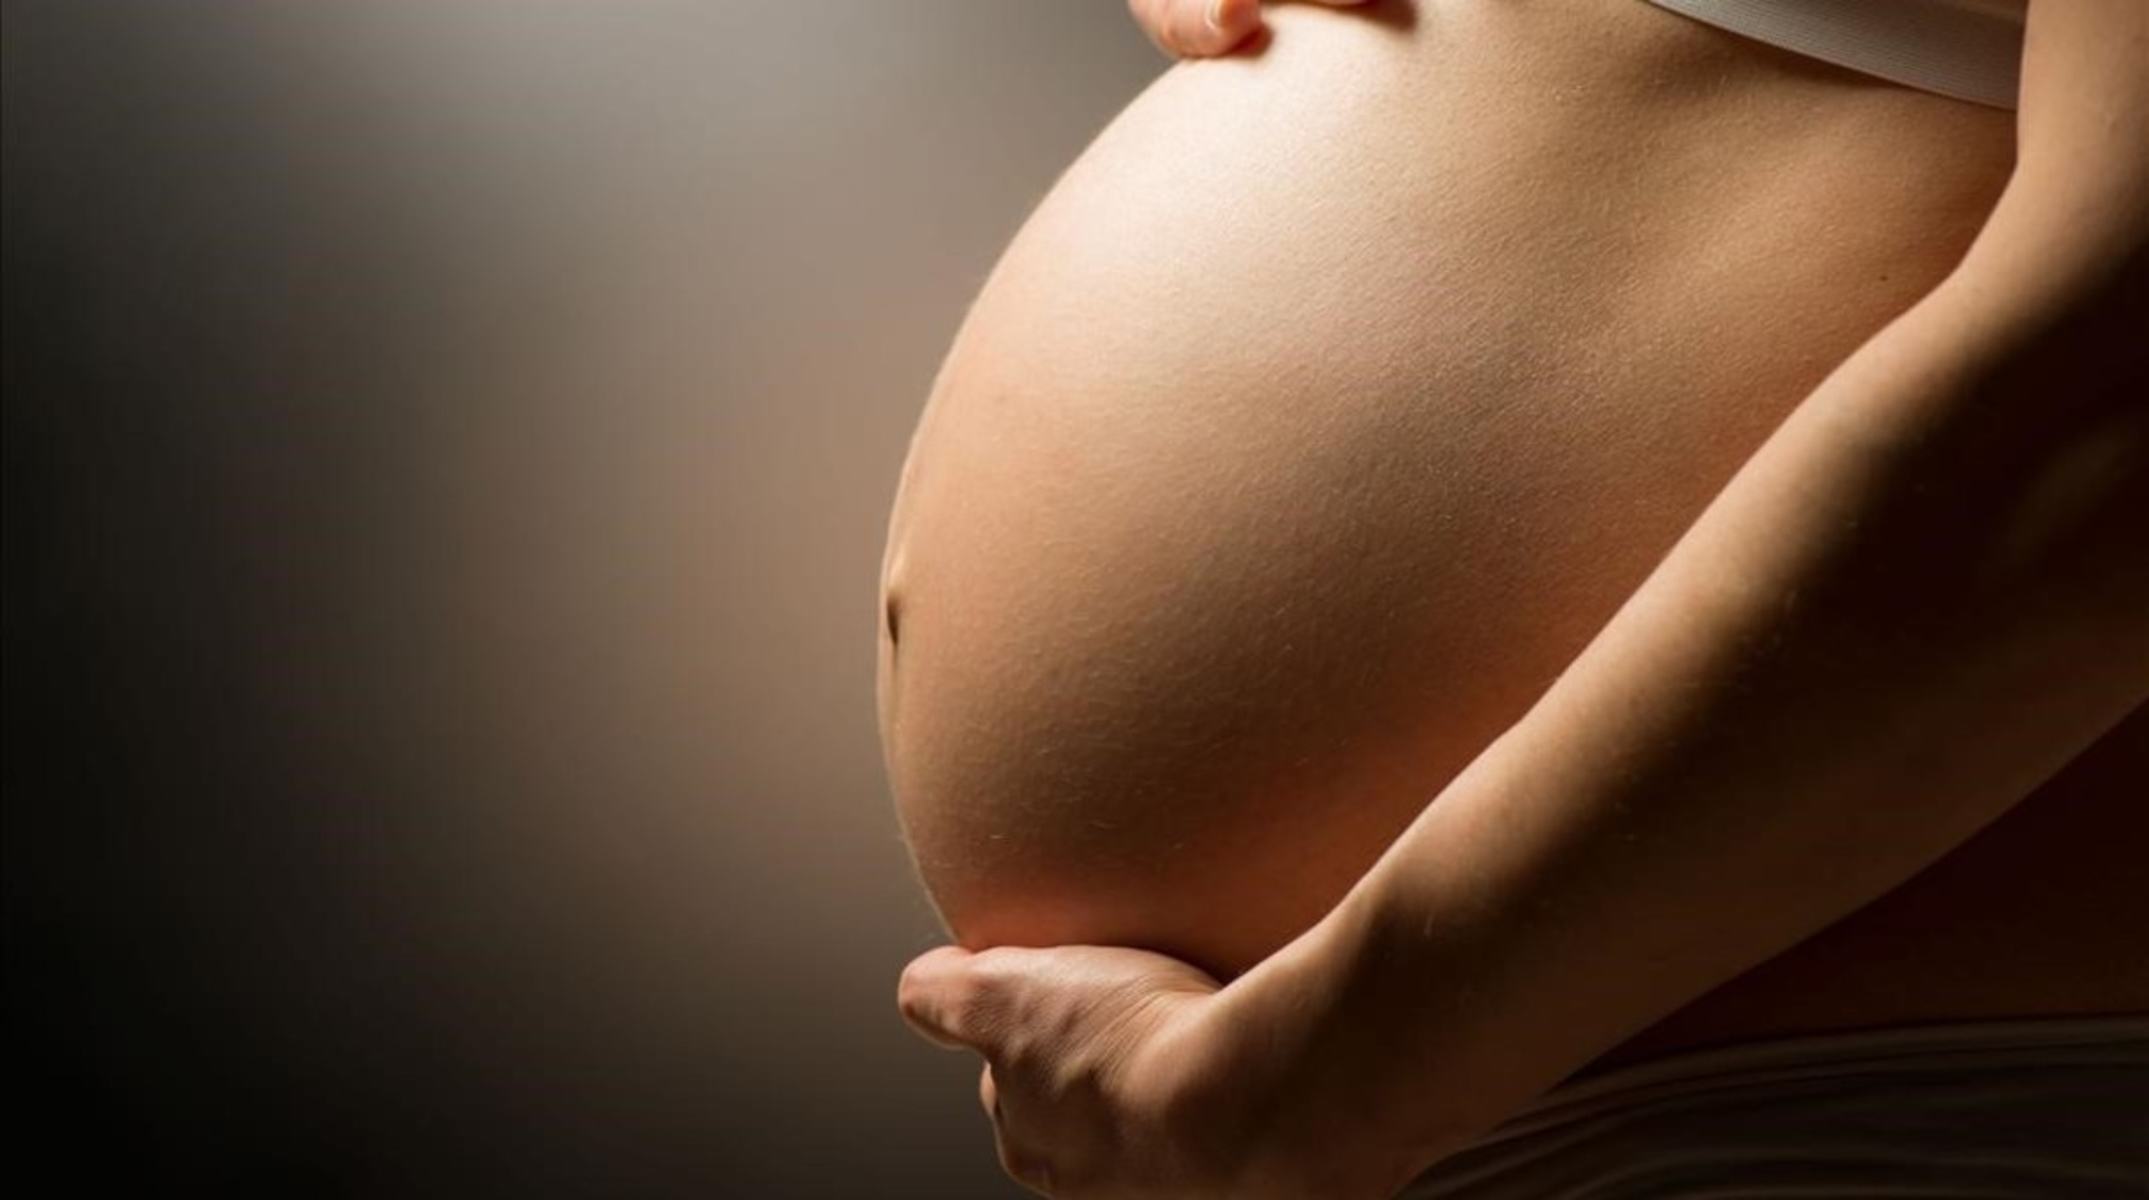 Συνέπειες άγχους: Κατά την διάρκεια της εγκυμοσύνης